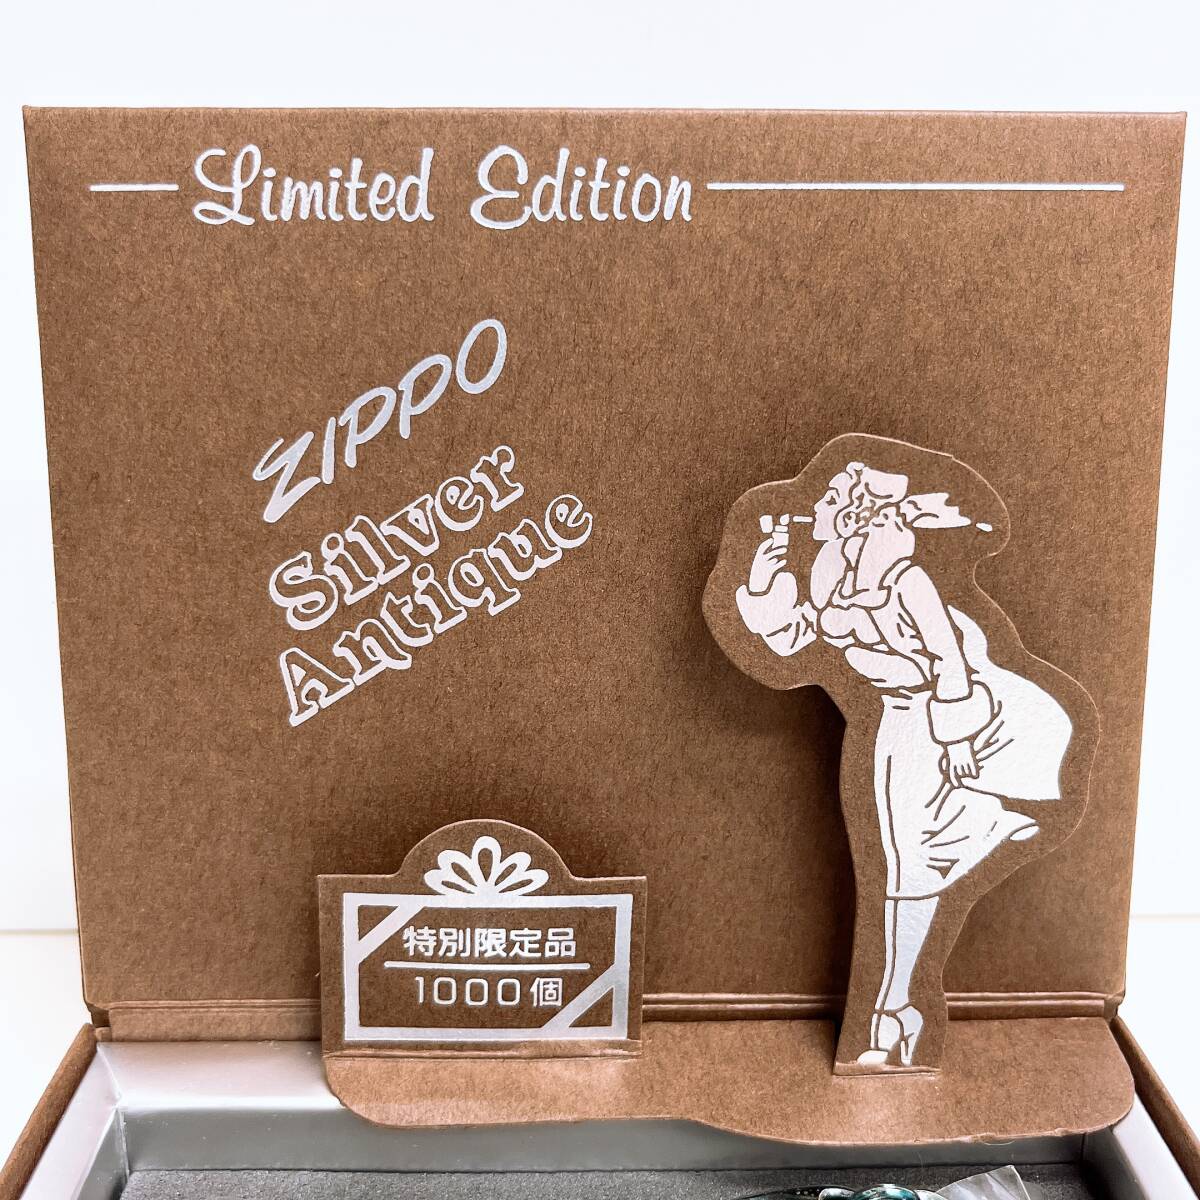 超希少 シリアル入り 未使用 Windy 限定1000個 limited edition silver antique 1996年製 ウィンディ ZIPPO ジッポー オイルライター_画像7